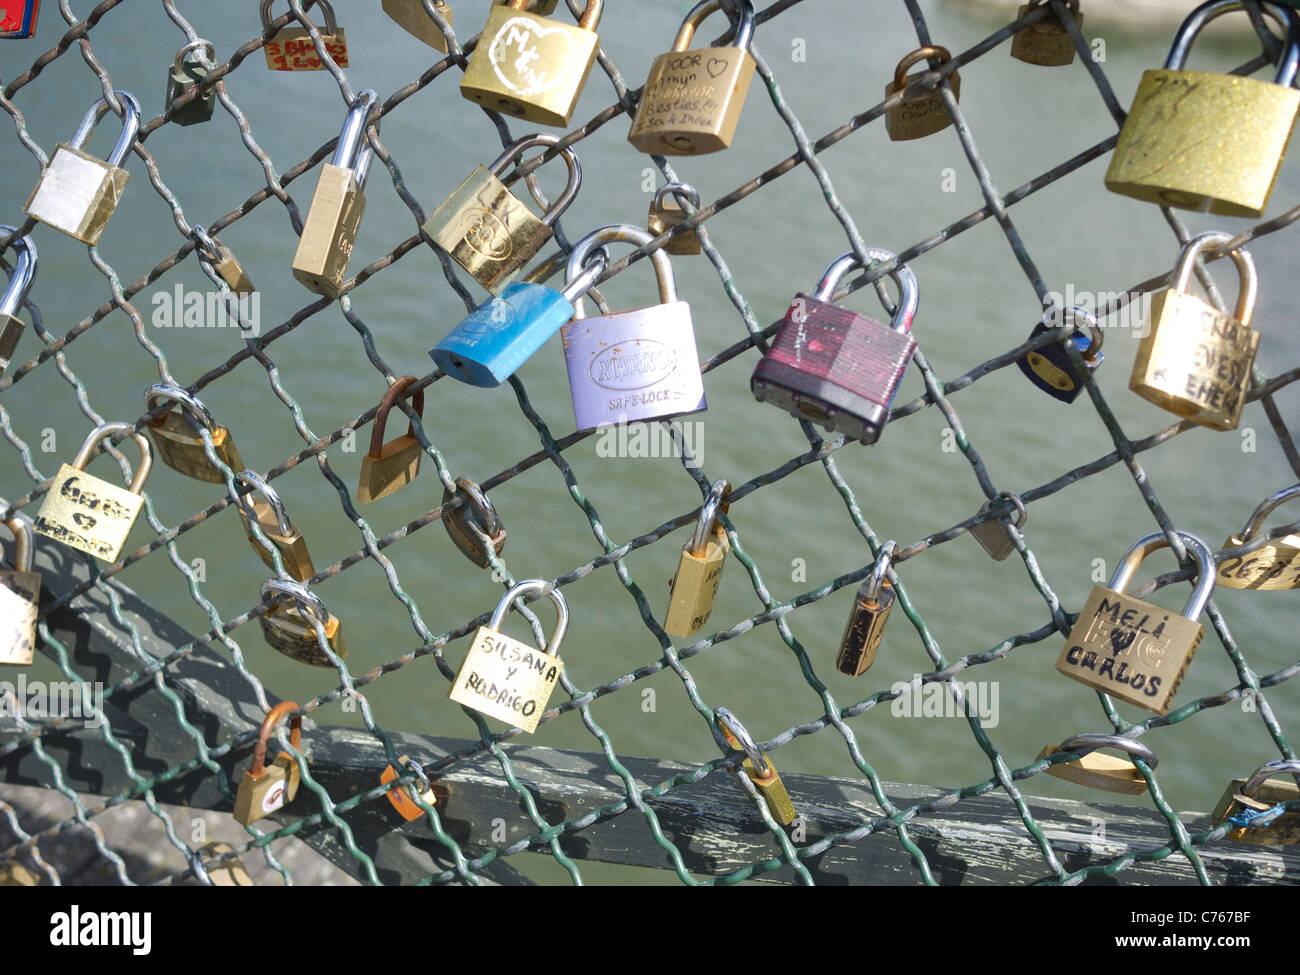 Cadenas d'amour sur le pont Pont des Arts, Paris France Banque D'Images